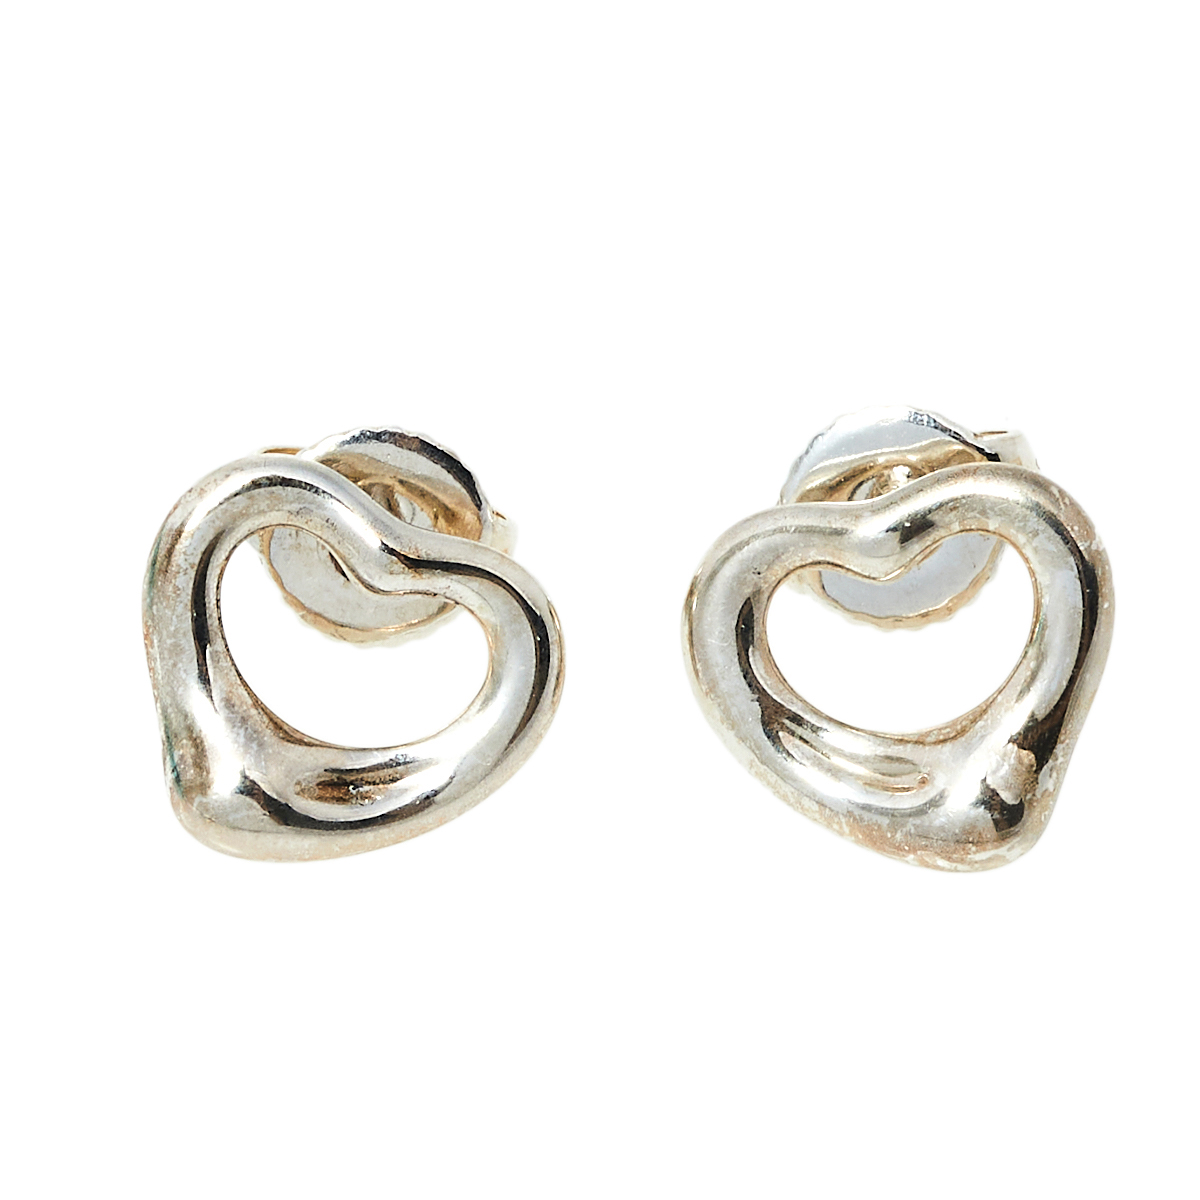 Tiffany & Co. Elsa Peretti Sterling Silver Open Heart Stud Earrings